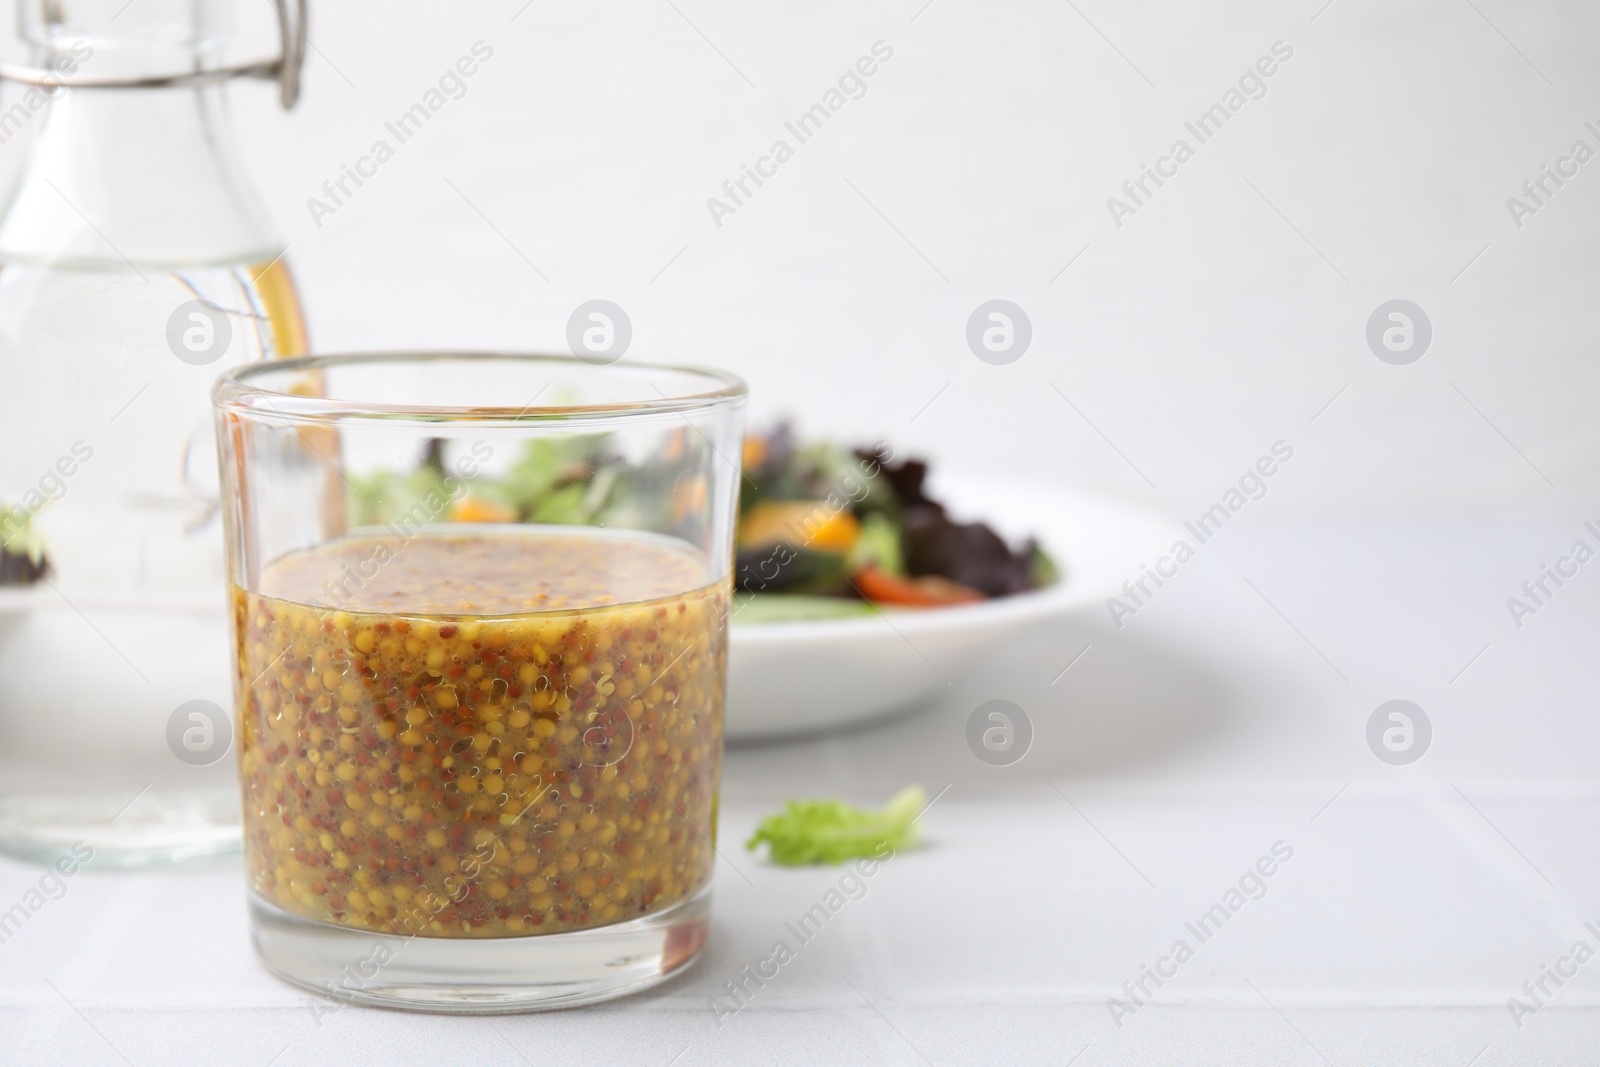 Photo of Tasty vinegar based sauce (Vinaigrette) in glass on light tiled table, closeup. Space for text